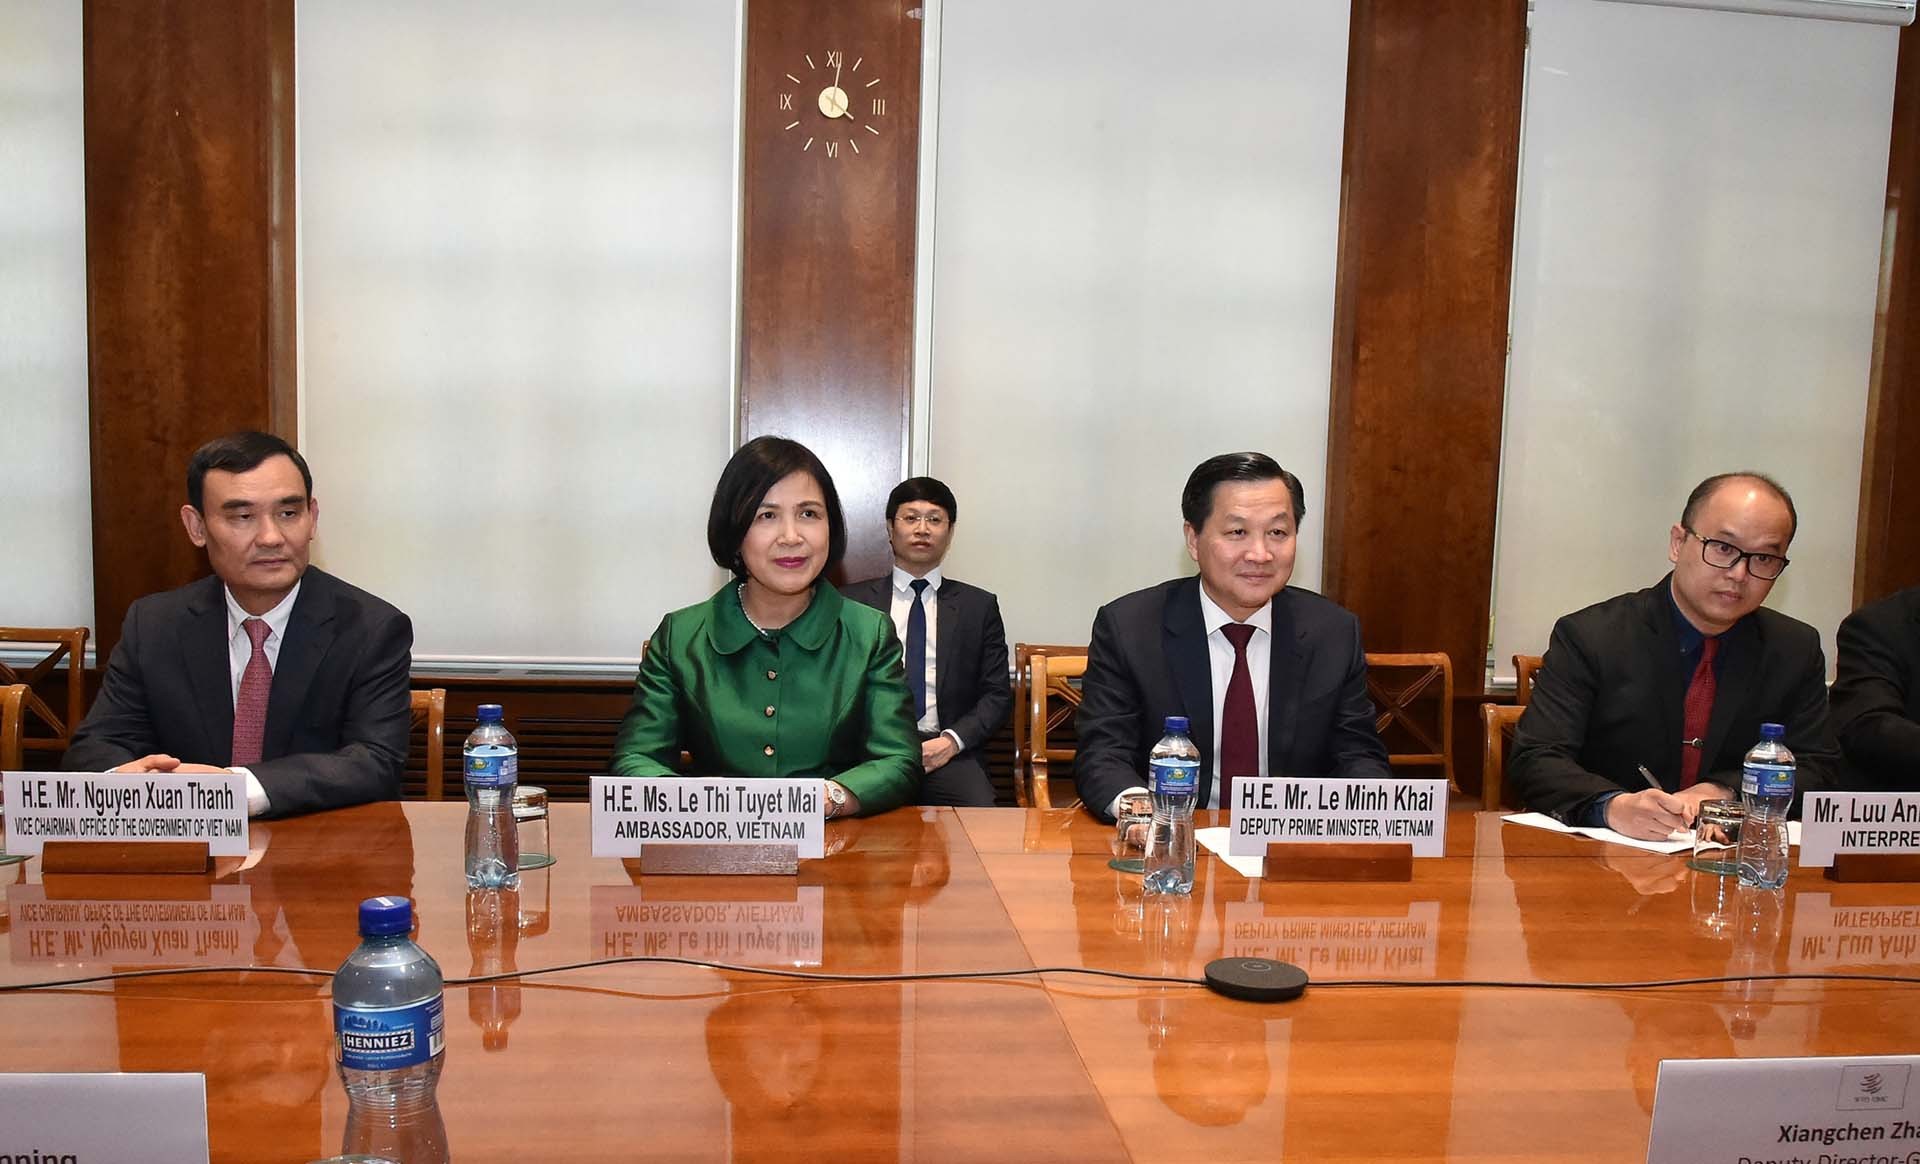 Phó Thủ tướng Lê Minh Khái khẳng định Việt Nam coi trọng vai trò trung tâm của WTO trong thúc đẩy hệ thống thương mại đa phương mở, minh bạch, dựa trên luật lệ, loại bỏ các hàng rào thuế quan, chống chủ nghĩa bảo hộ thương mại.